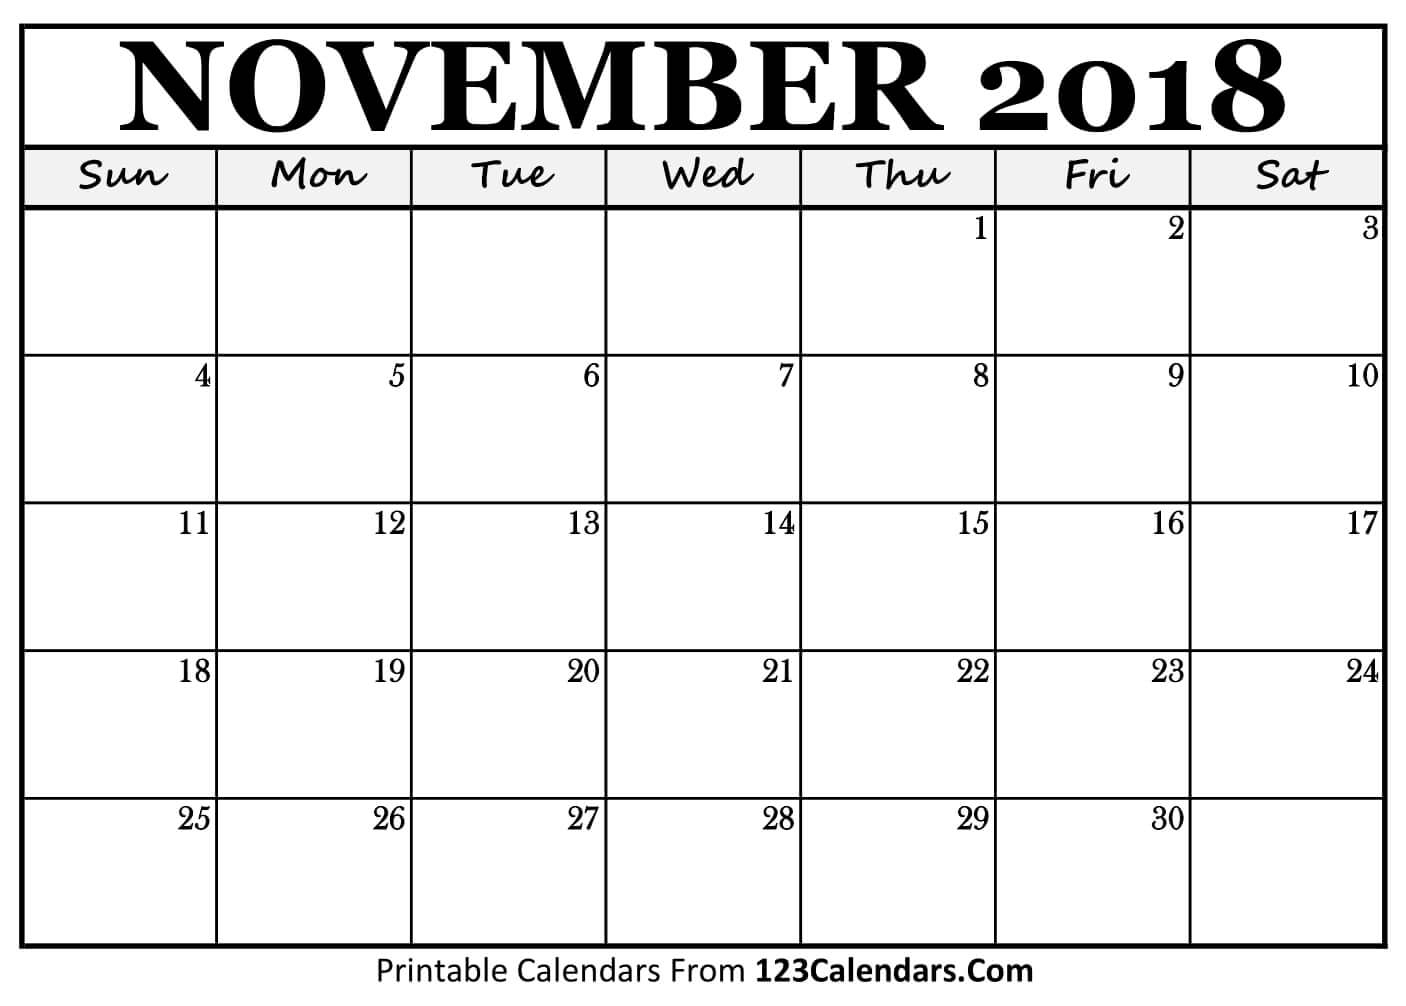 Printable November 2018 Calendar Templates 123calendars